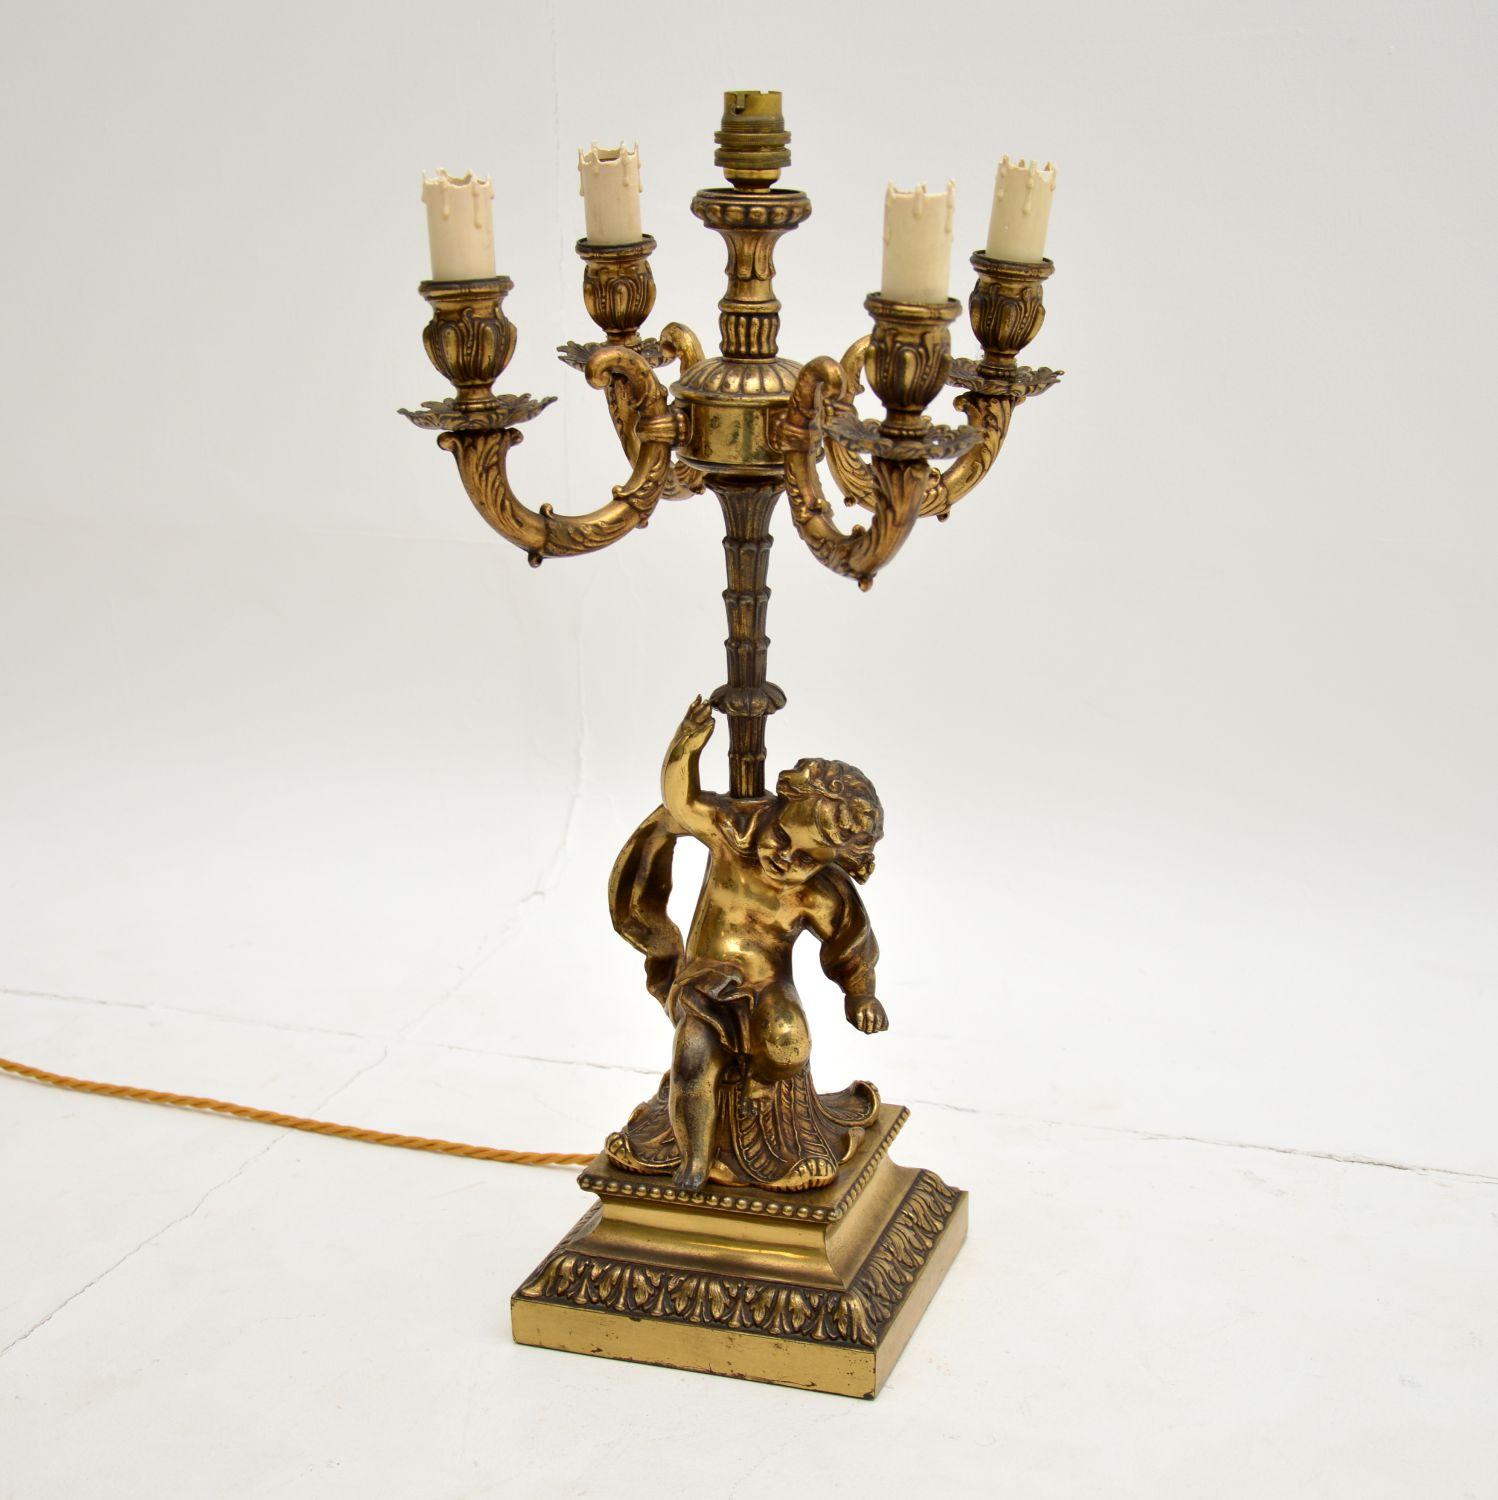 Une superbe lampe de table ancienne en métal doré, fabriquée en France et datant de la période 1910-20.

Il s'agit d'une pièce de très belle qualité, avec un chérubin finement moulé et plein de caractère soutenant la colonne principale. Il y a